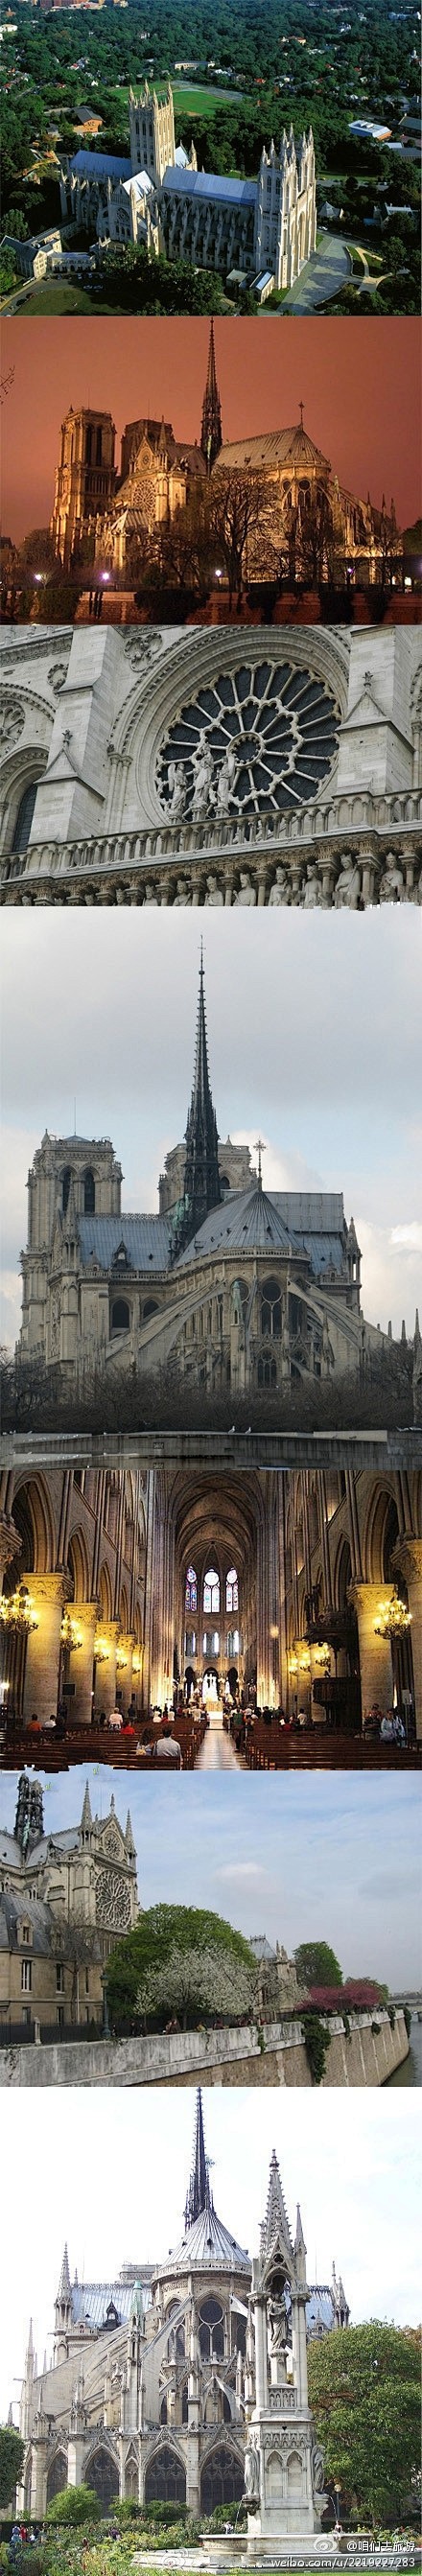 【巴黎圣母院】一座典型的“哥德式”教堂。...